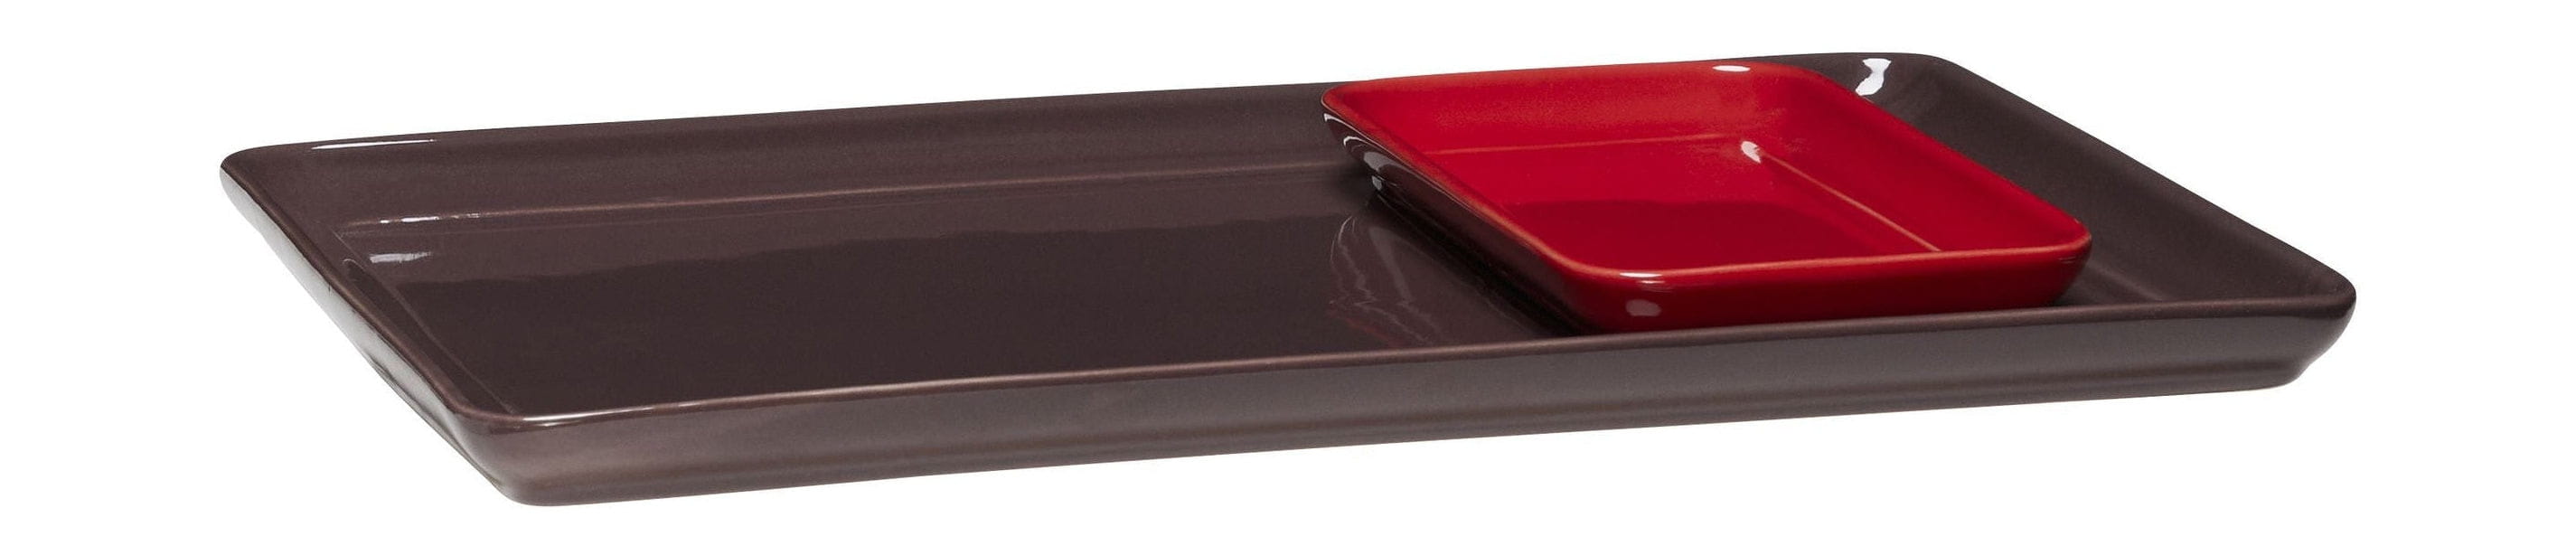 Hübsch Amare Tablett Set Of 2, Burgundy/Red